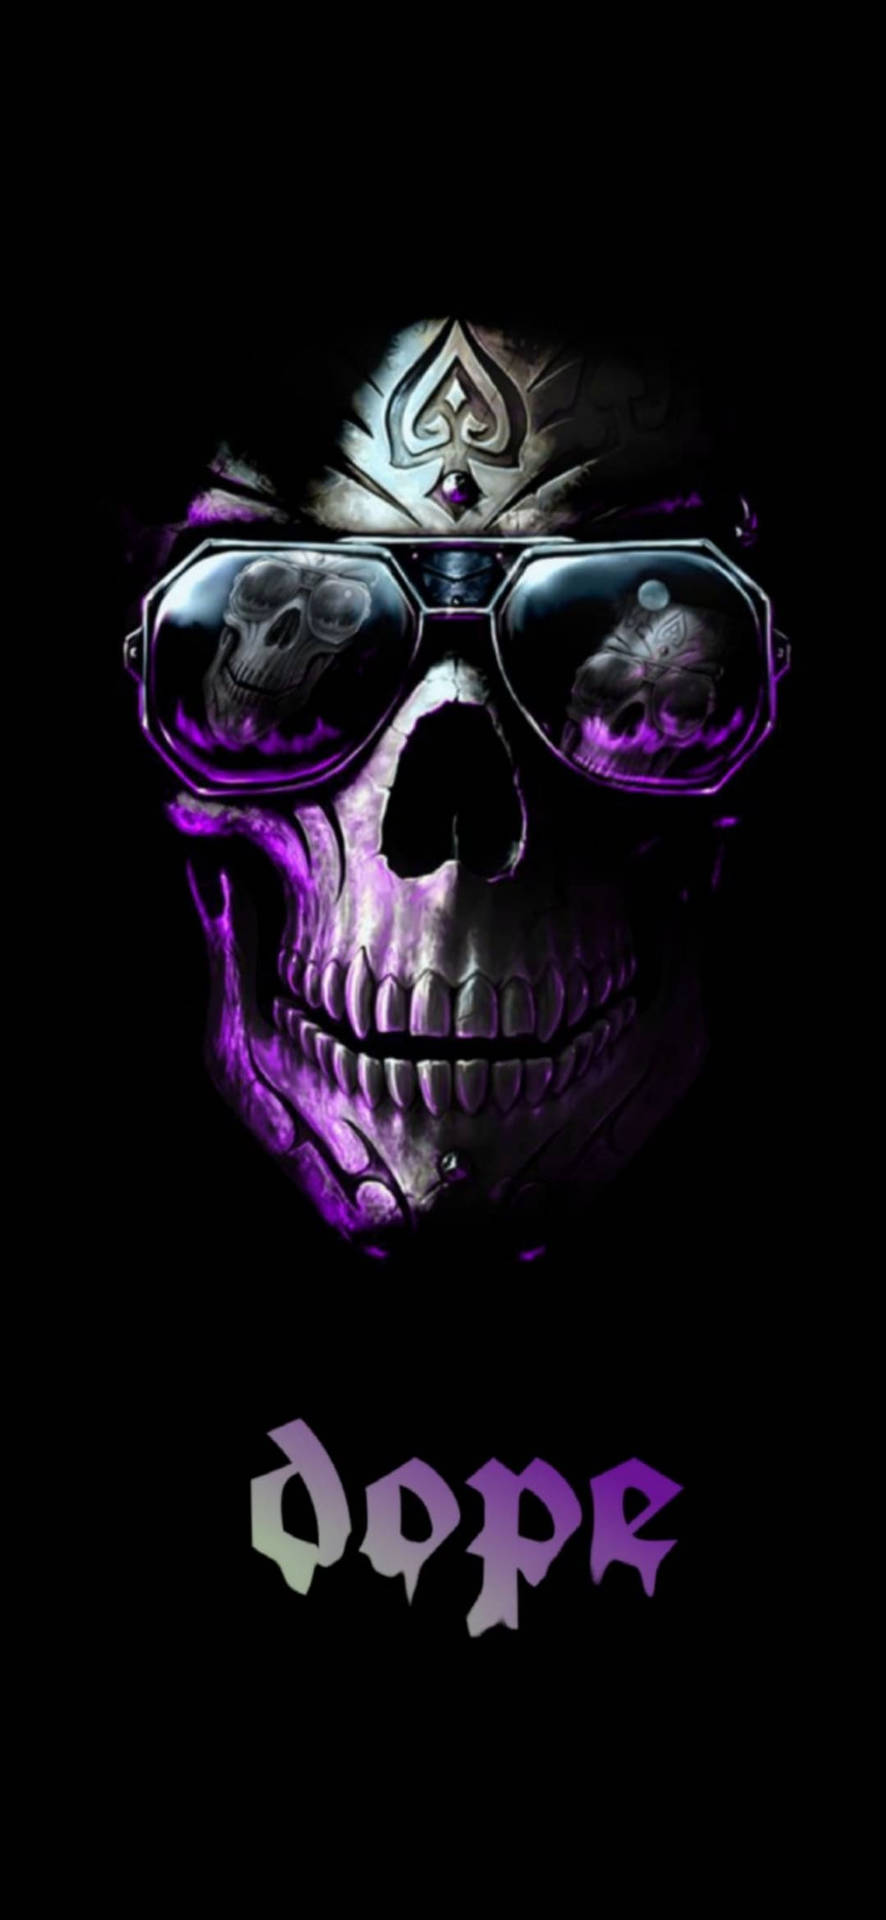 Cool Dope Skull Art Background